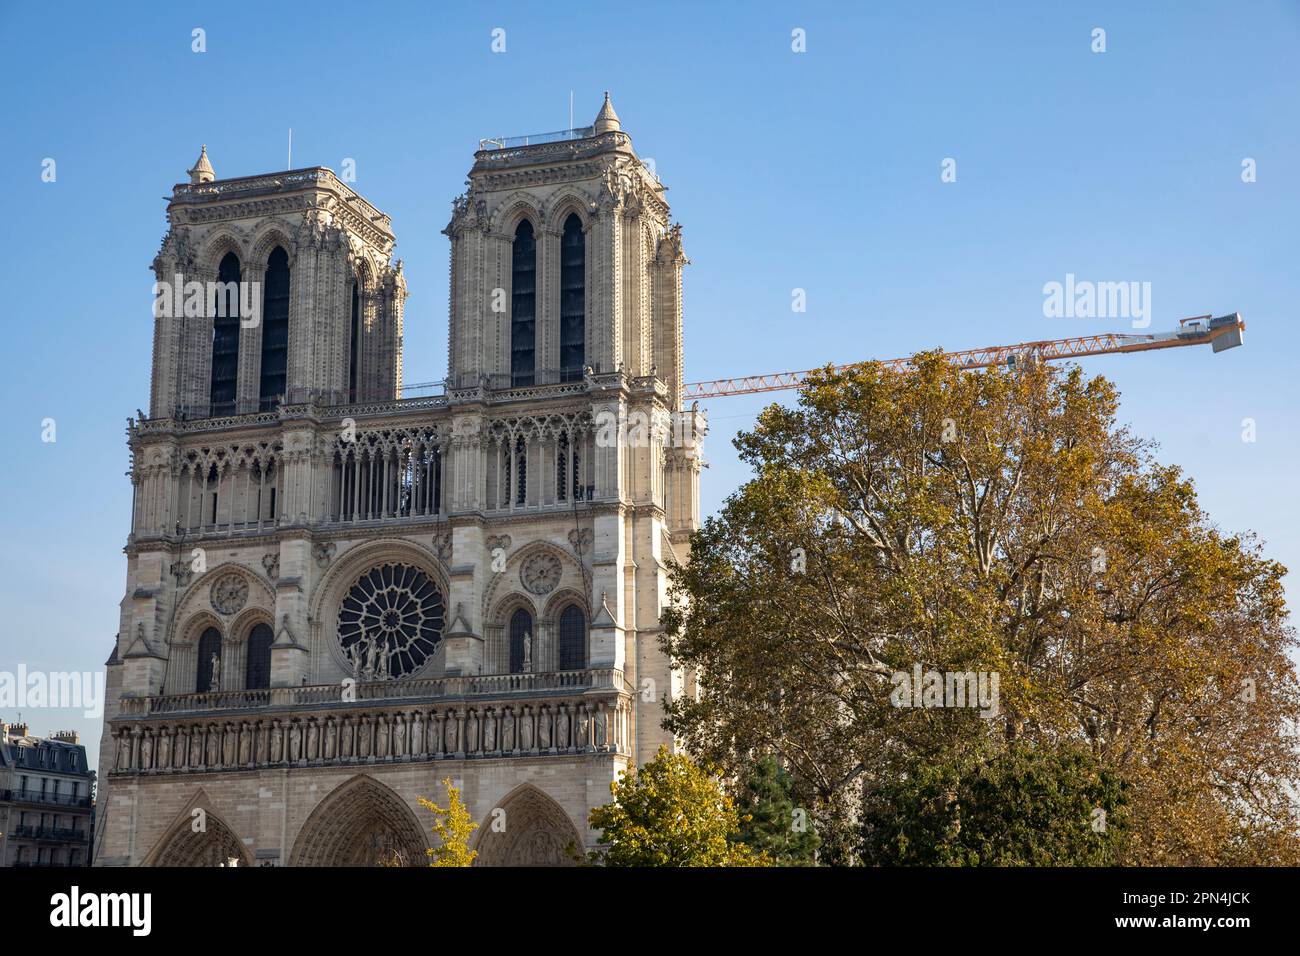 Westfassade beim Besuch der Kathedrale Notre-Dame de Paris, in der am 15. April 2019 ein Großbrand entstanden war. Viele Teile des Dachstuhls verbrann Stock Photo